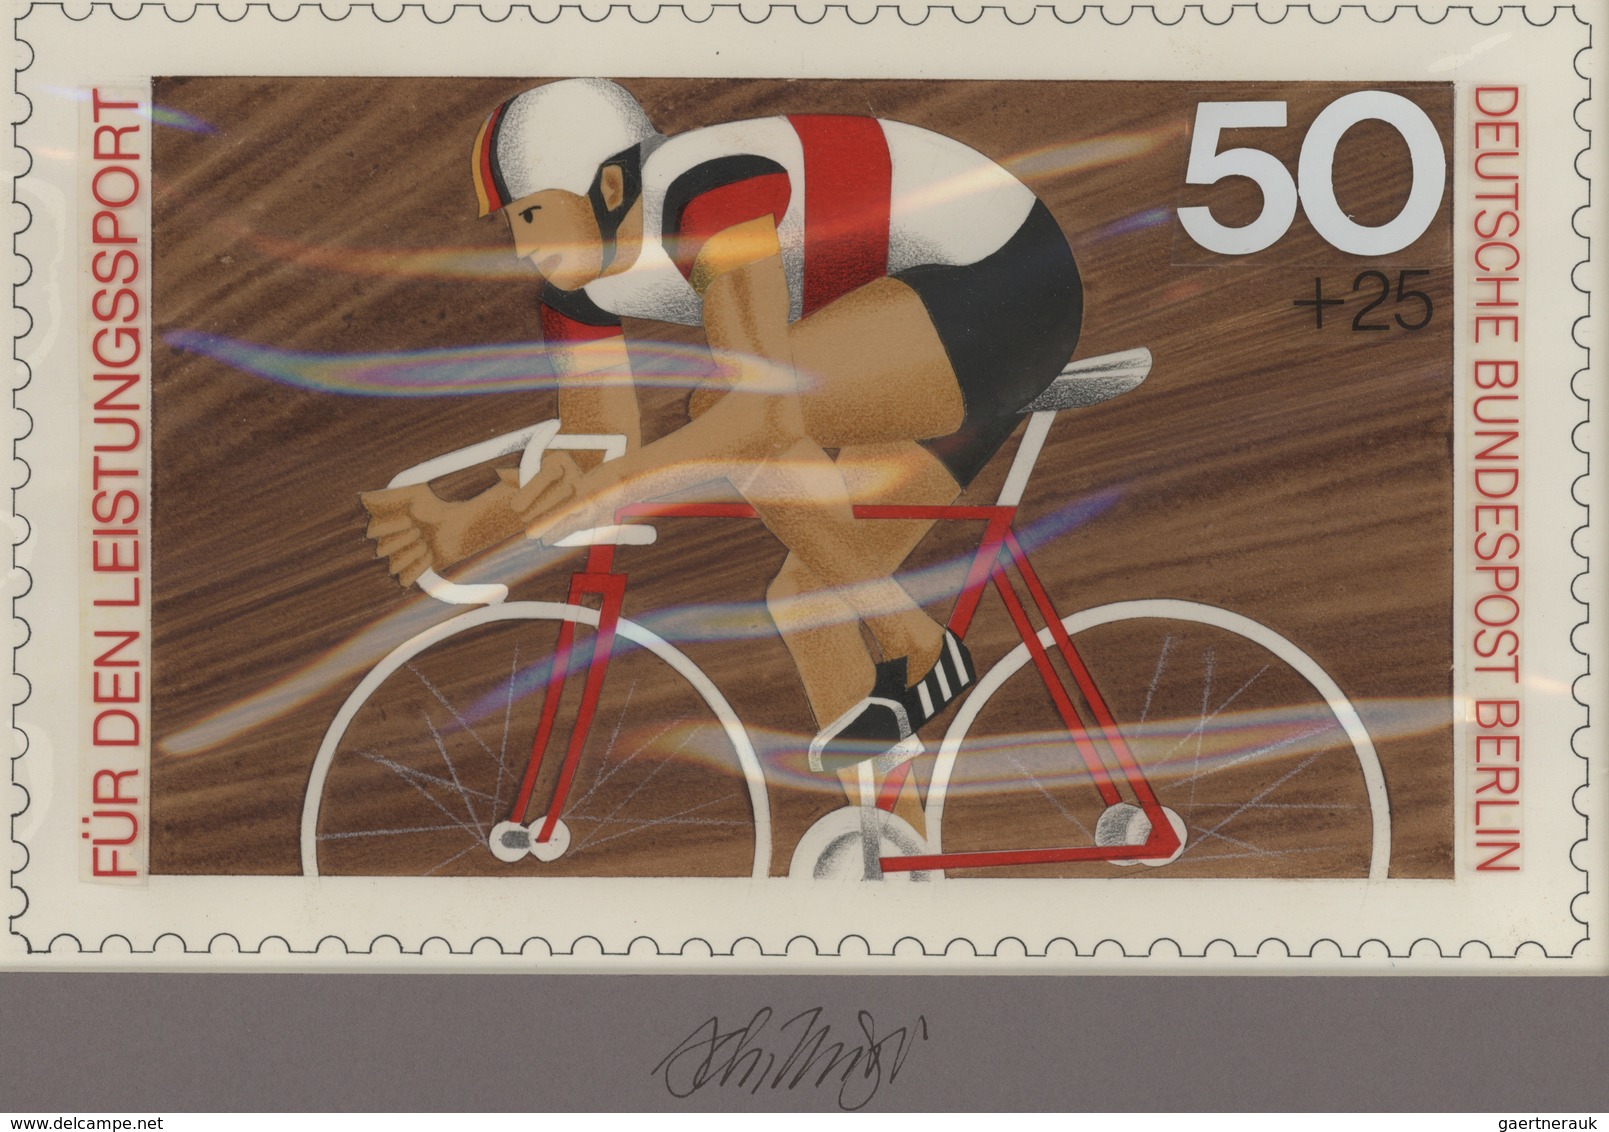 Thematik: Sport-Radsport / Sport-cycling: 1978, Berlin, Nicht Angenommener Künstlerentwurf (26,5x16, - Radsport